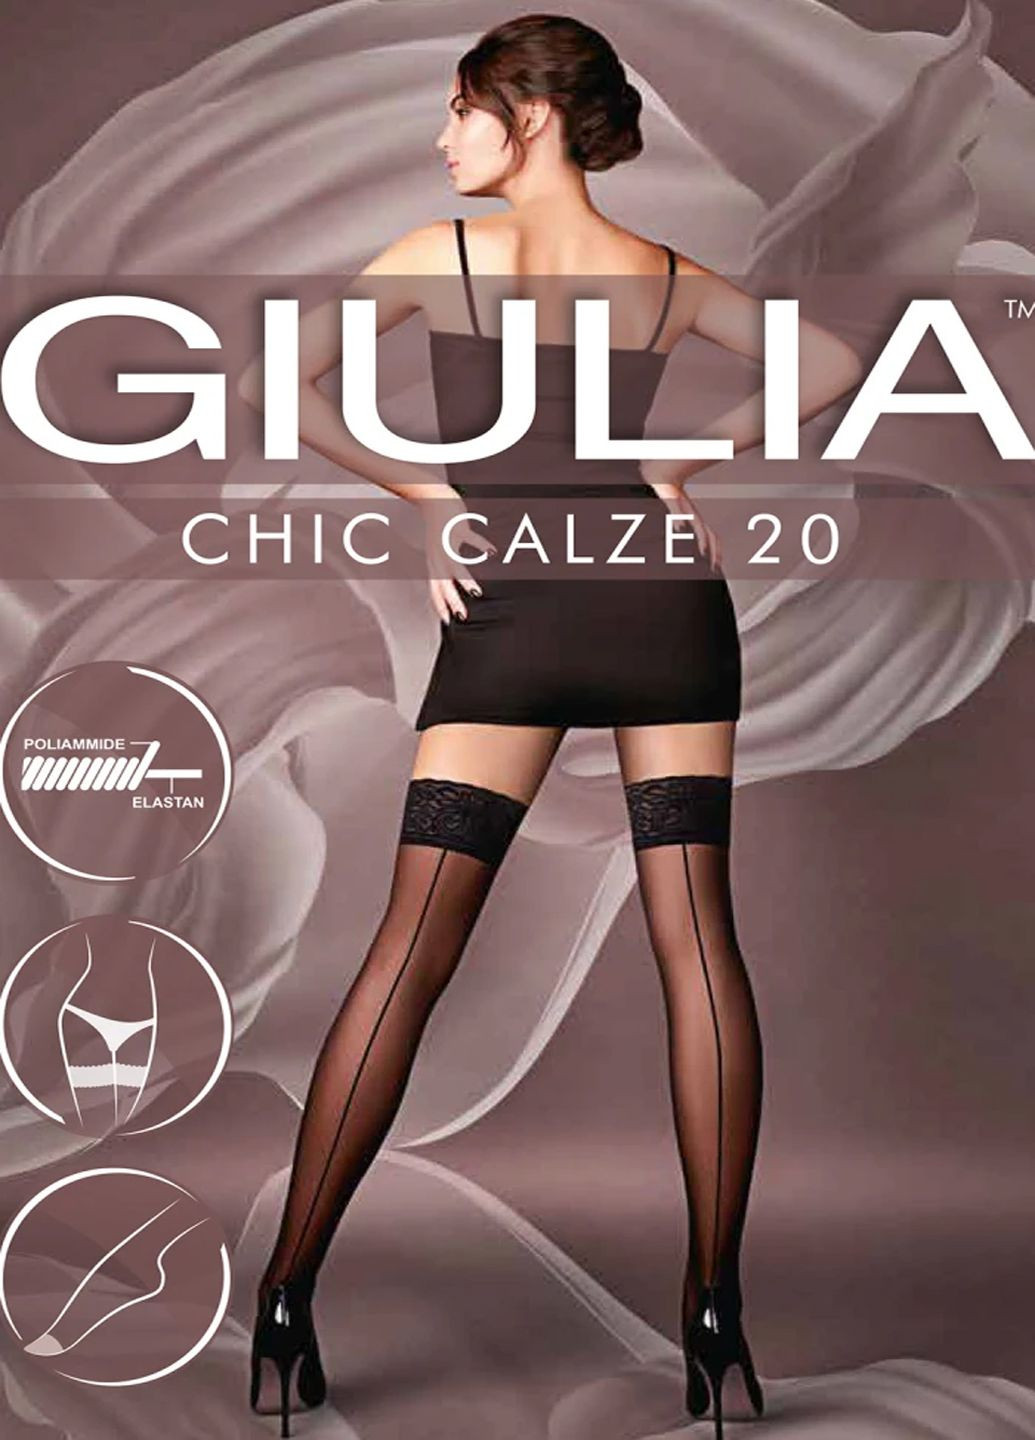 Чулки с декоративным швом Chic calze 20 DEN (daino-3/4 размер) Giulia (281029039)